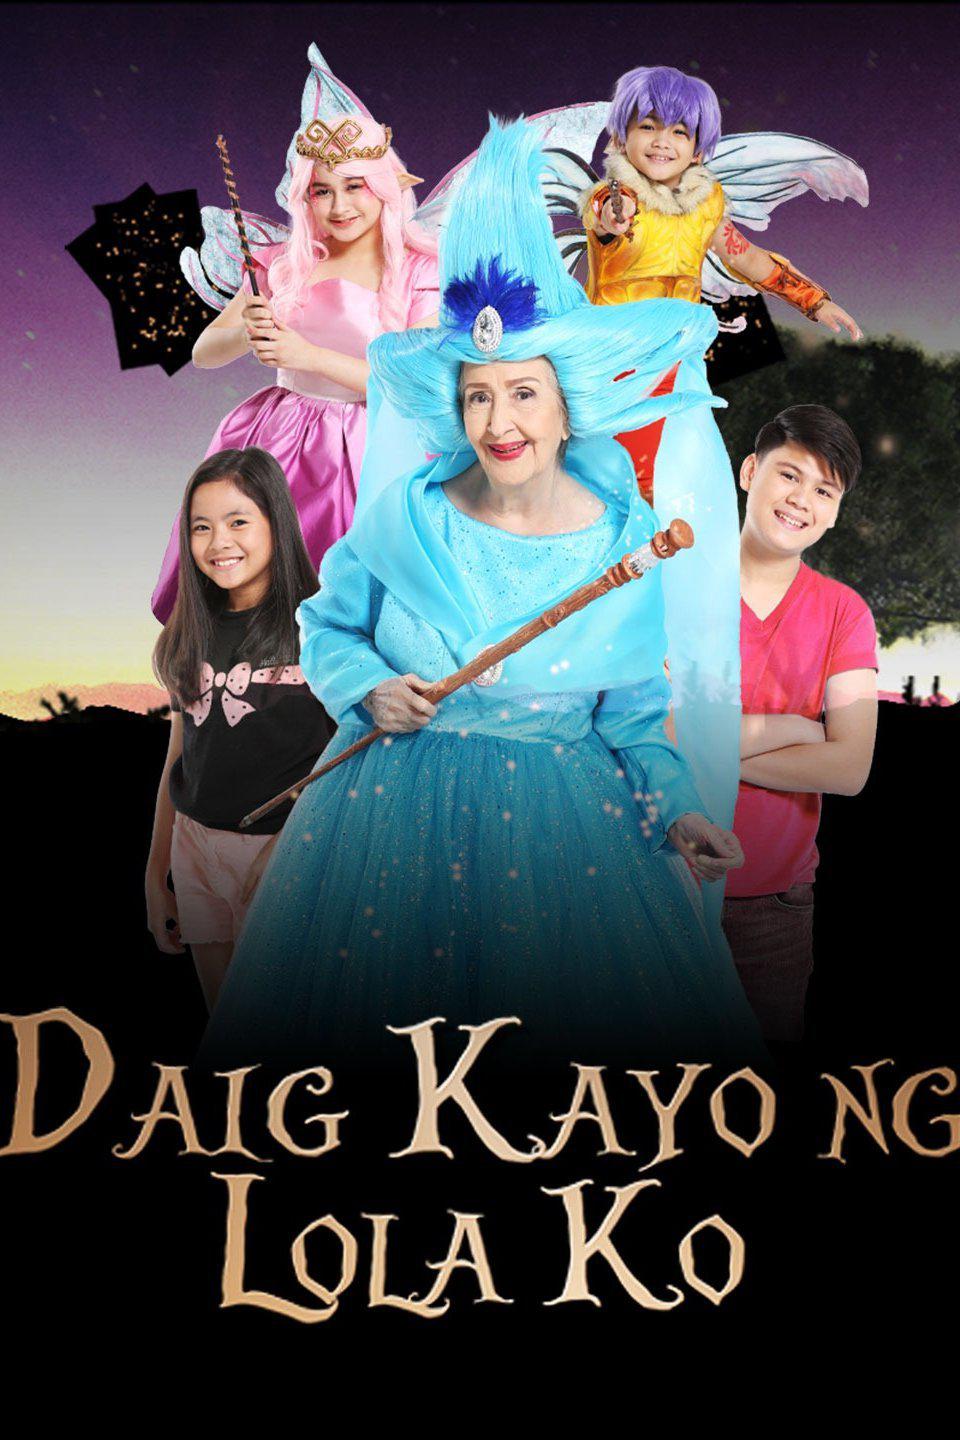 Daig Kayo Ng Lola Ko (GMA) India daily TV audience insights for